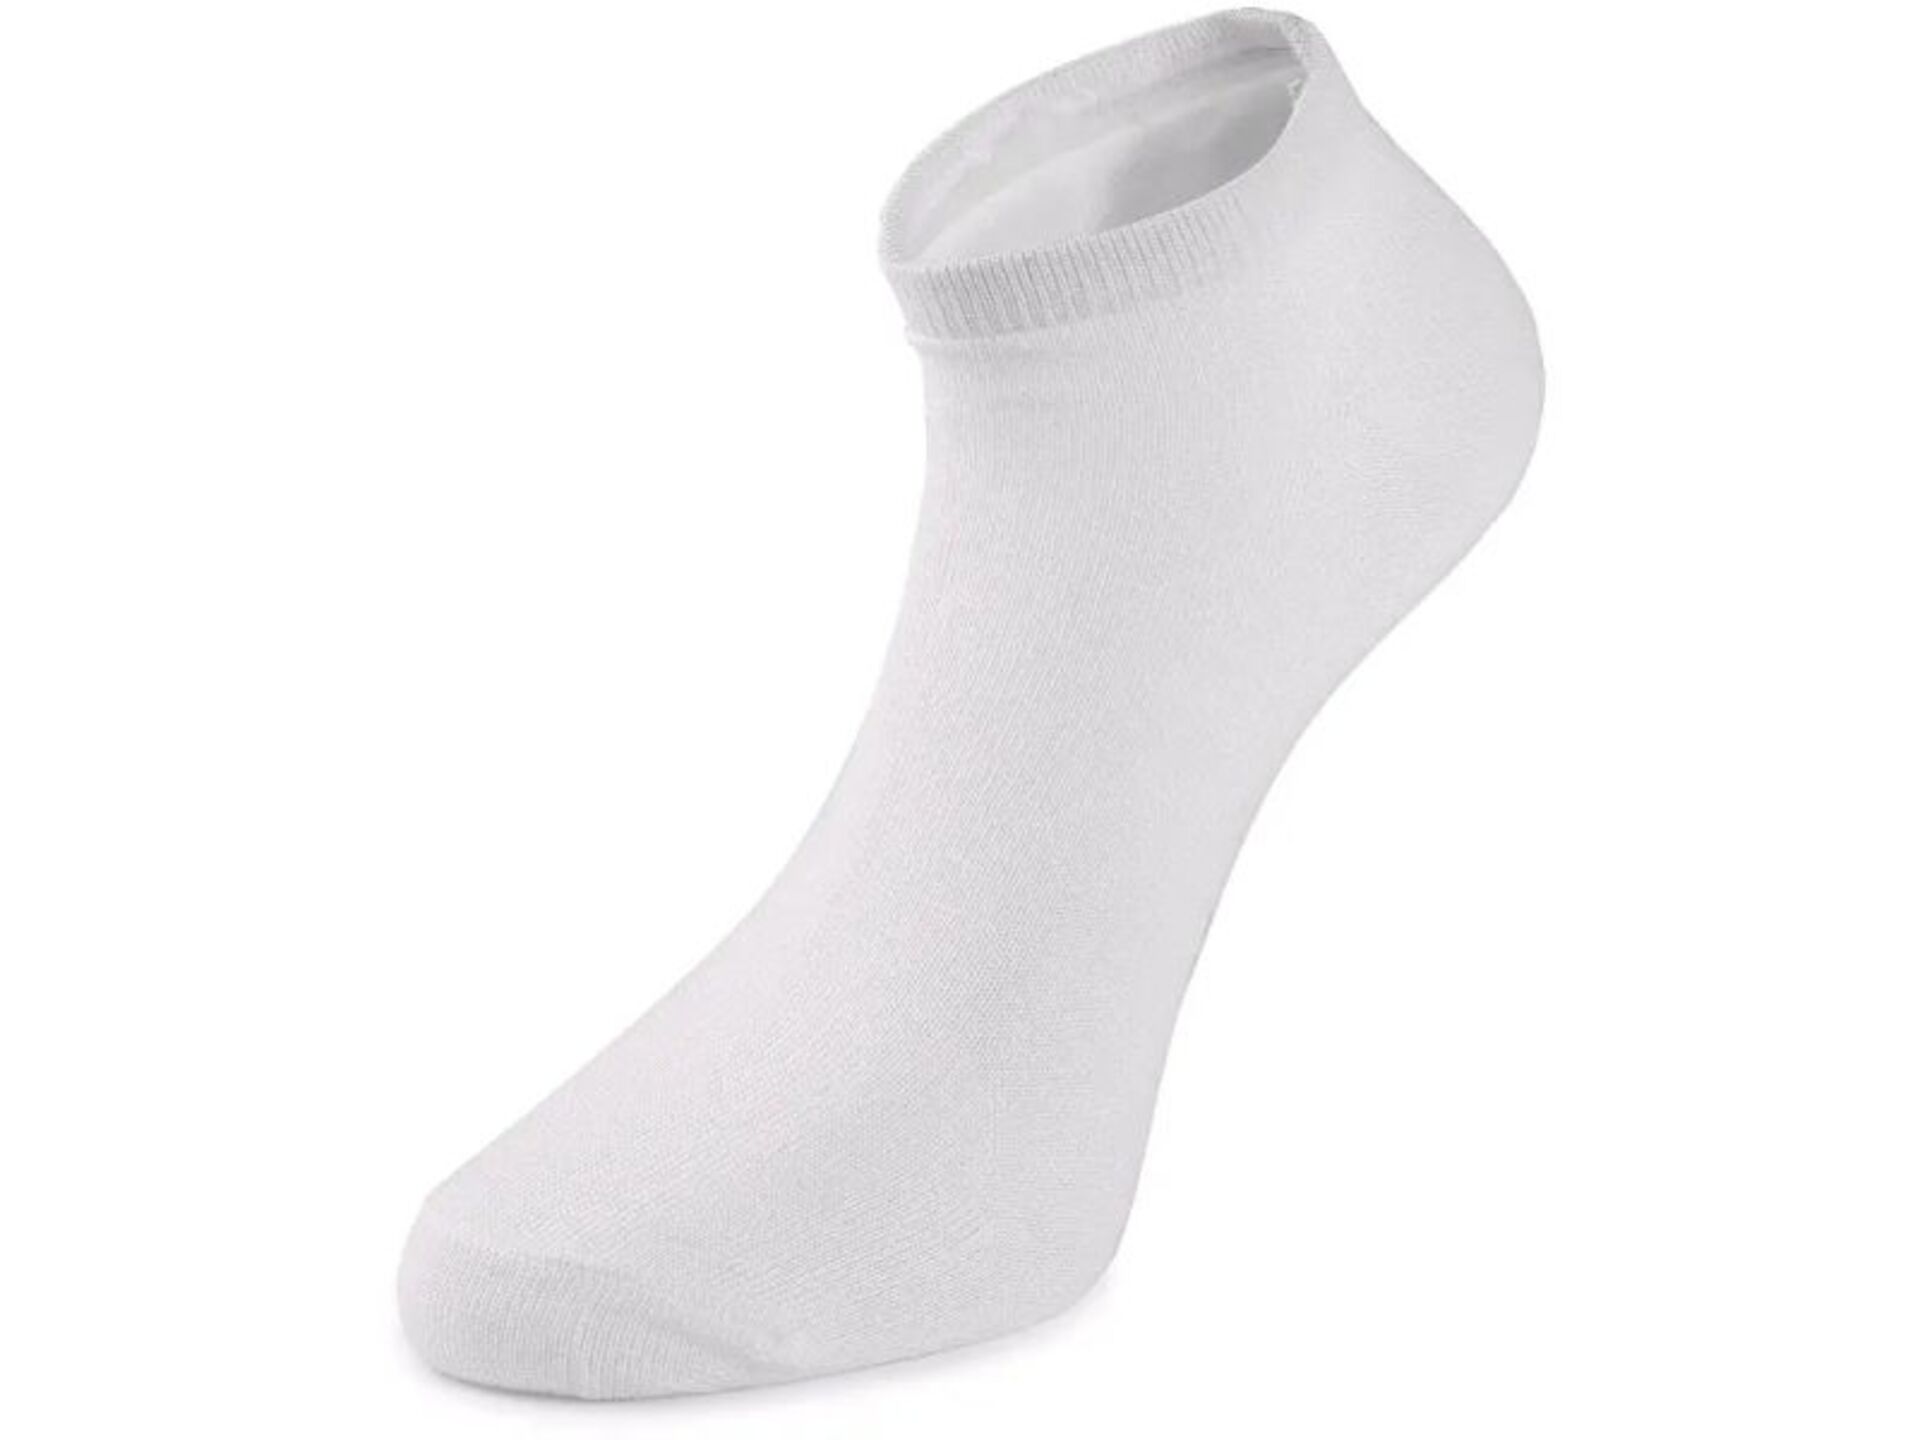 CXS ponožky NEVIS nízké bílé